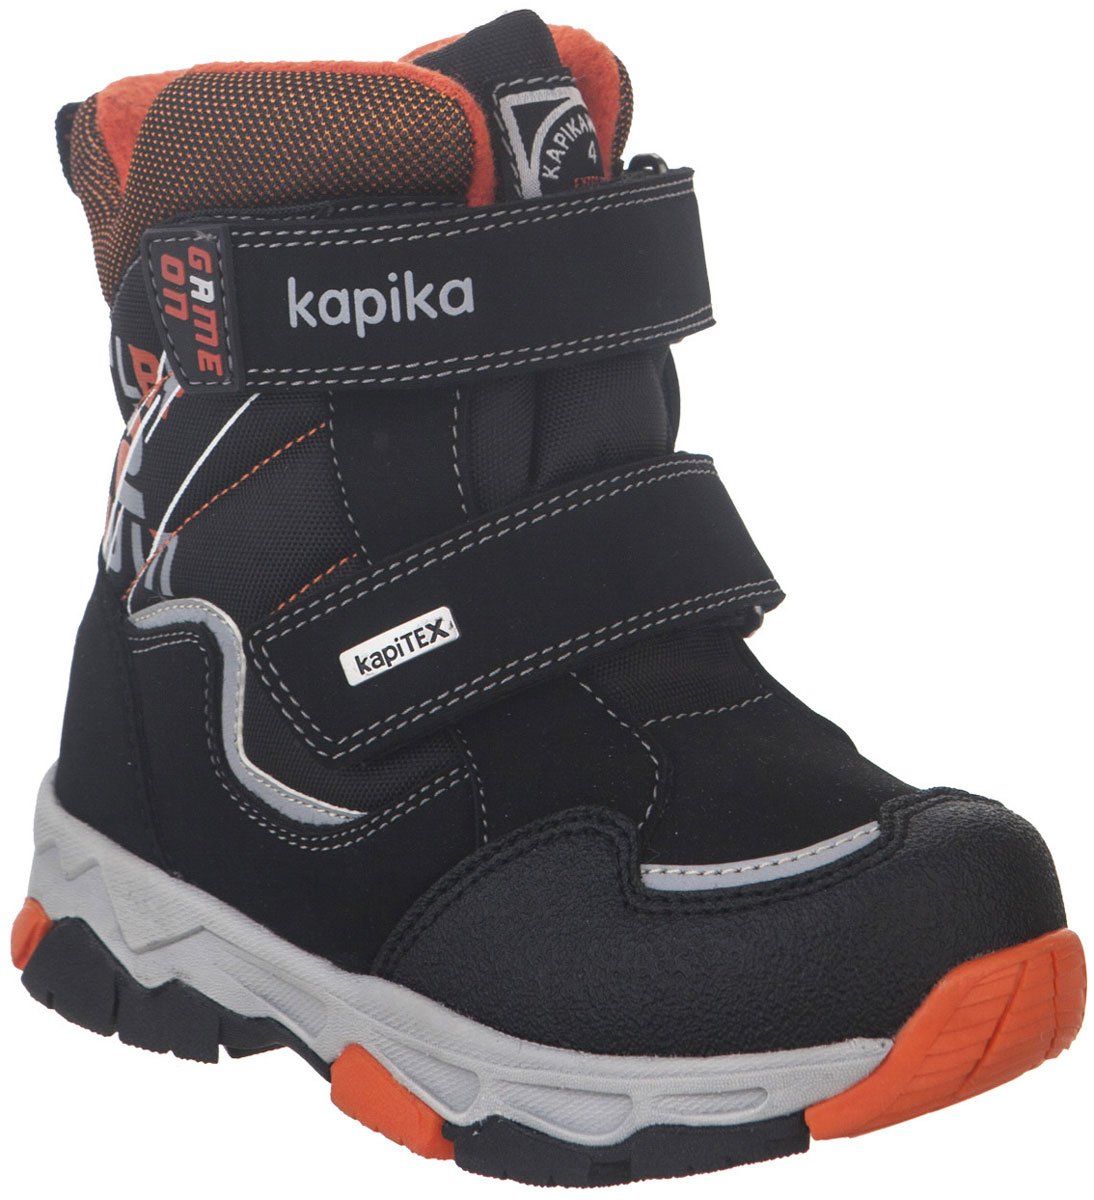 Ботинки для мальчика Kapika, цвет: черный, оранжевый. 42222-1. Размер 32